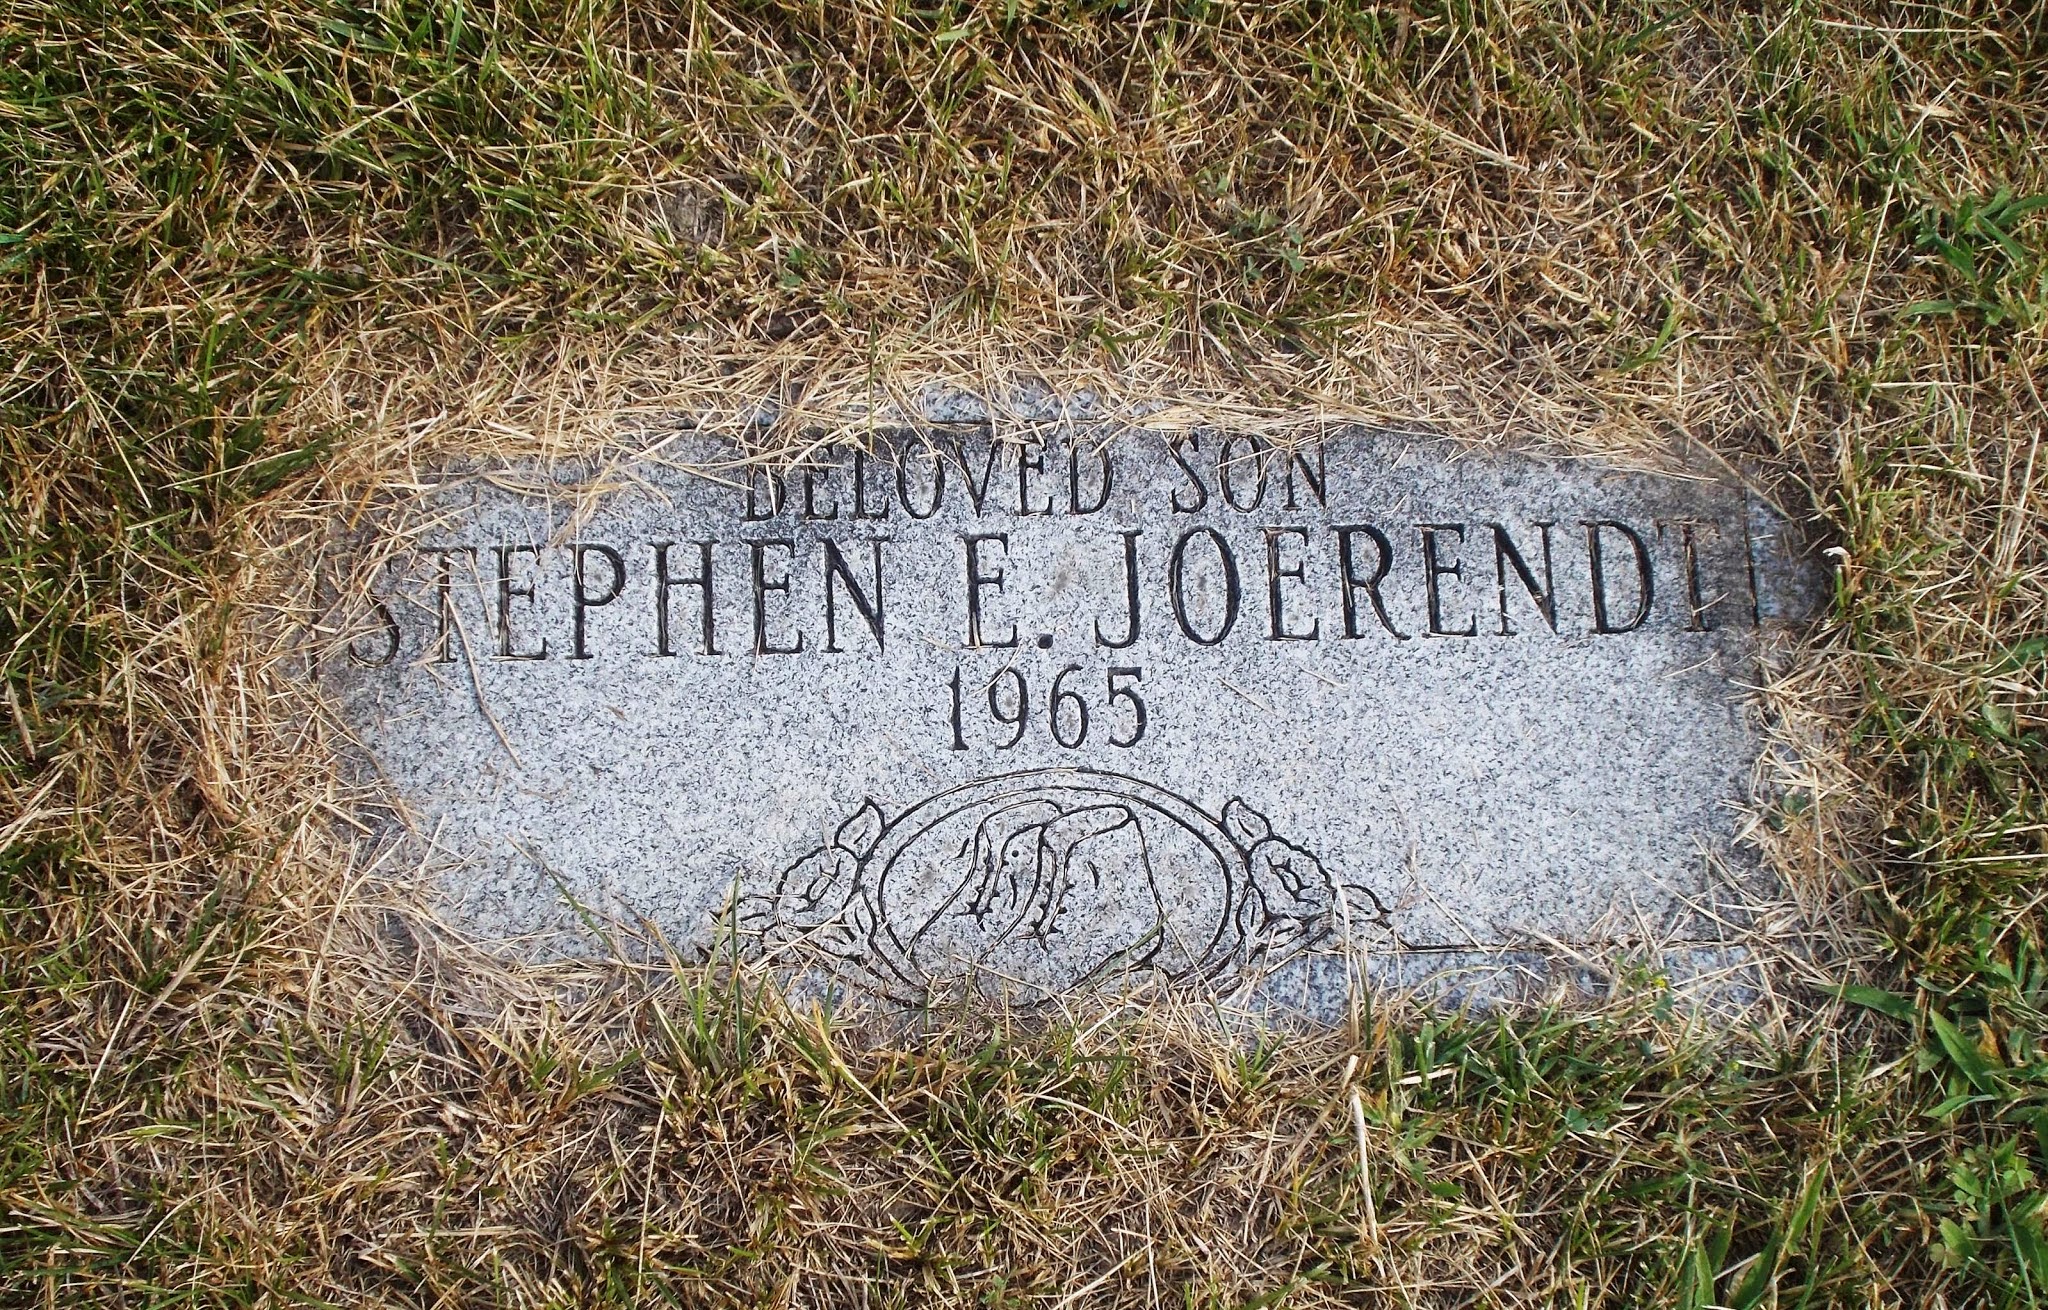 Stephen E Joerendt